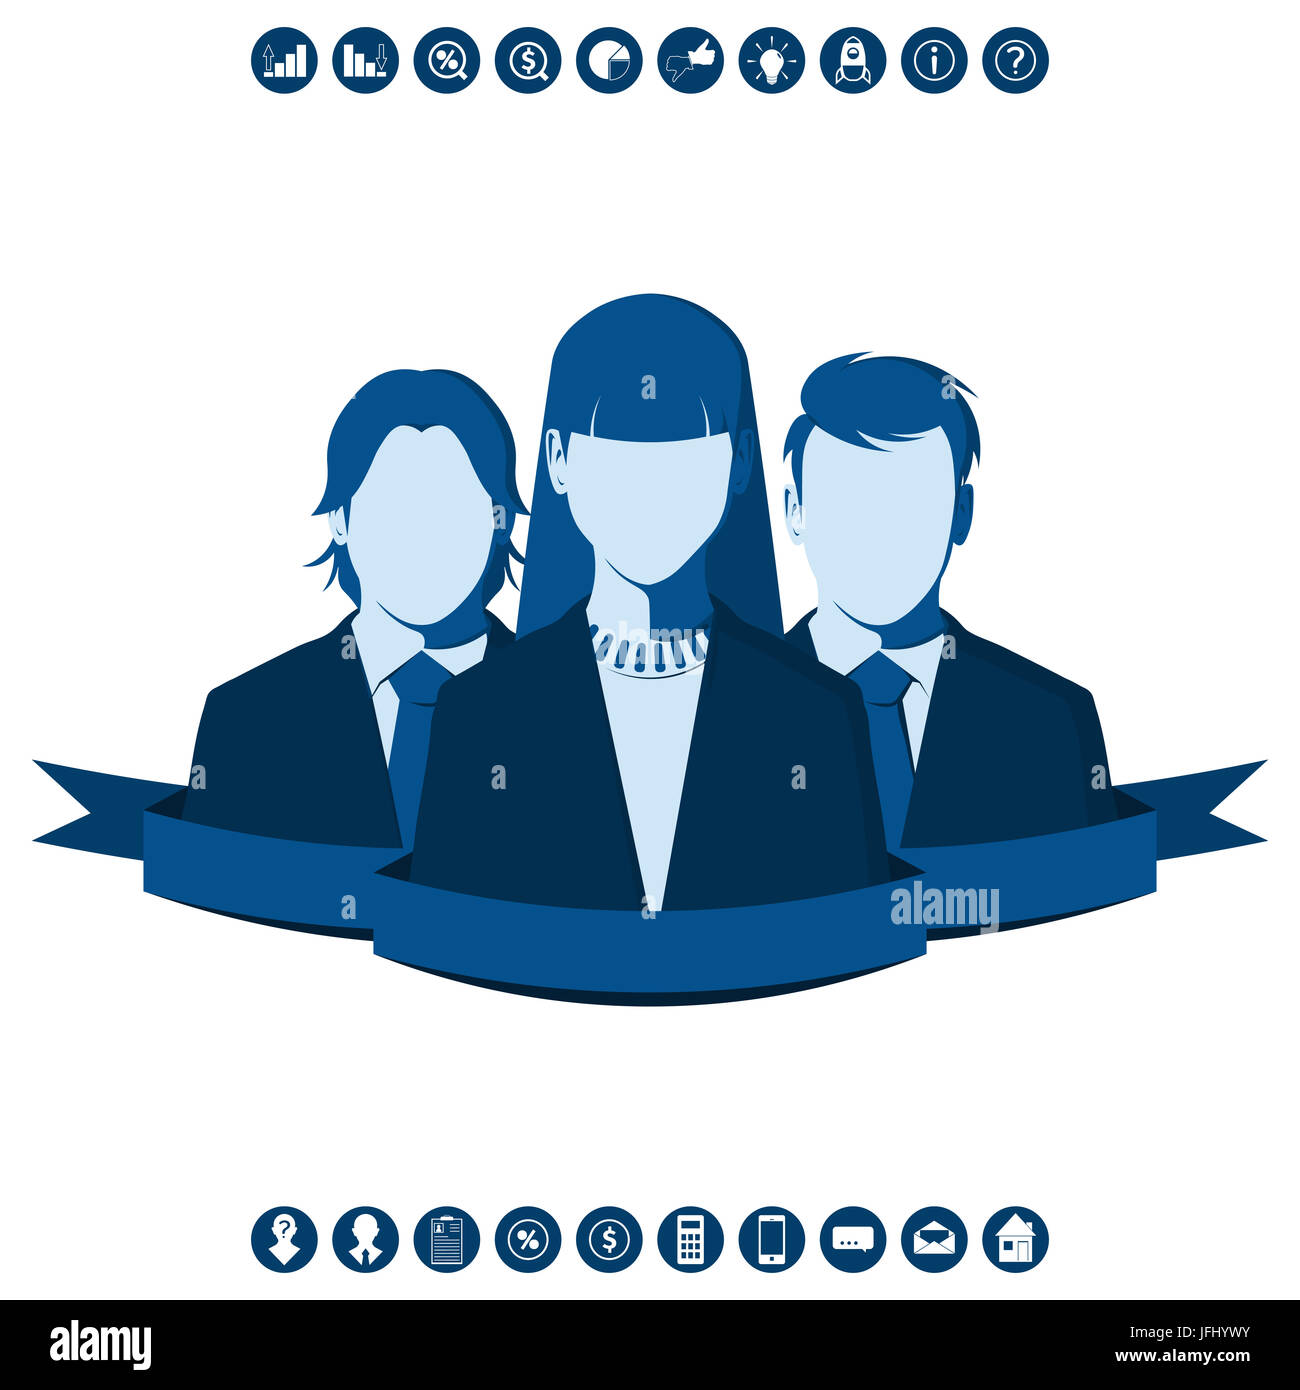 Männliche und weibliche Silhouetten von Geschäftsleuten, die isoliert auf weißem Hintergrund. Business Team, geführt von einer Frau. Menschen Teamarbeit flache Abbildung. Stockfoto